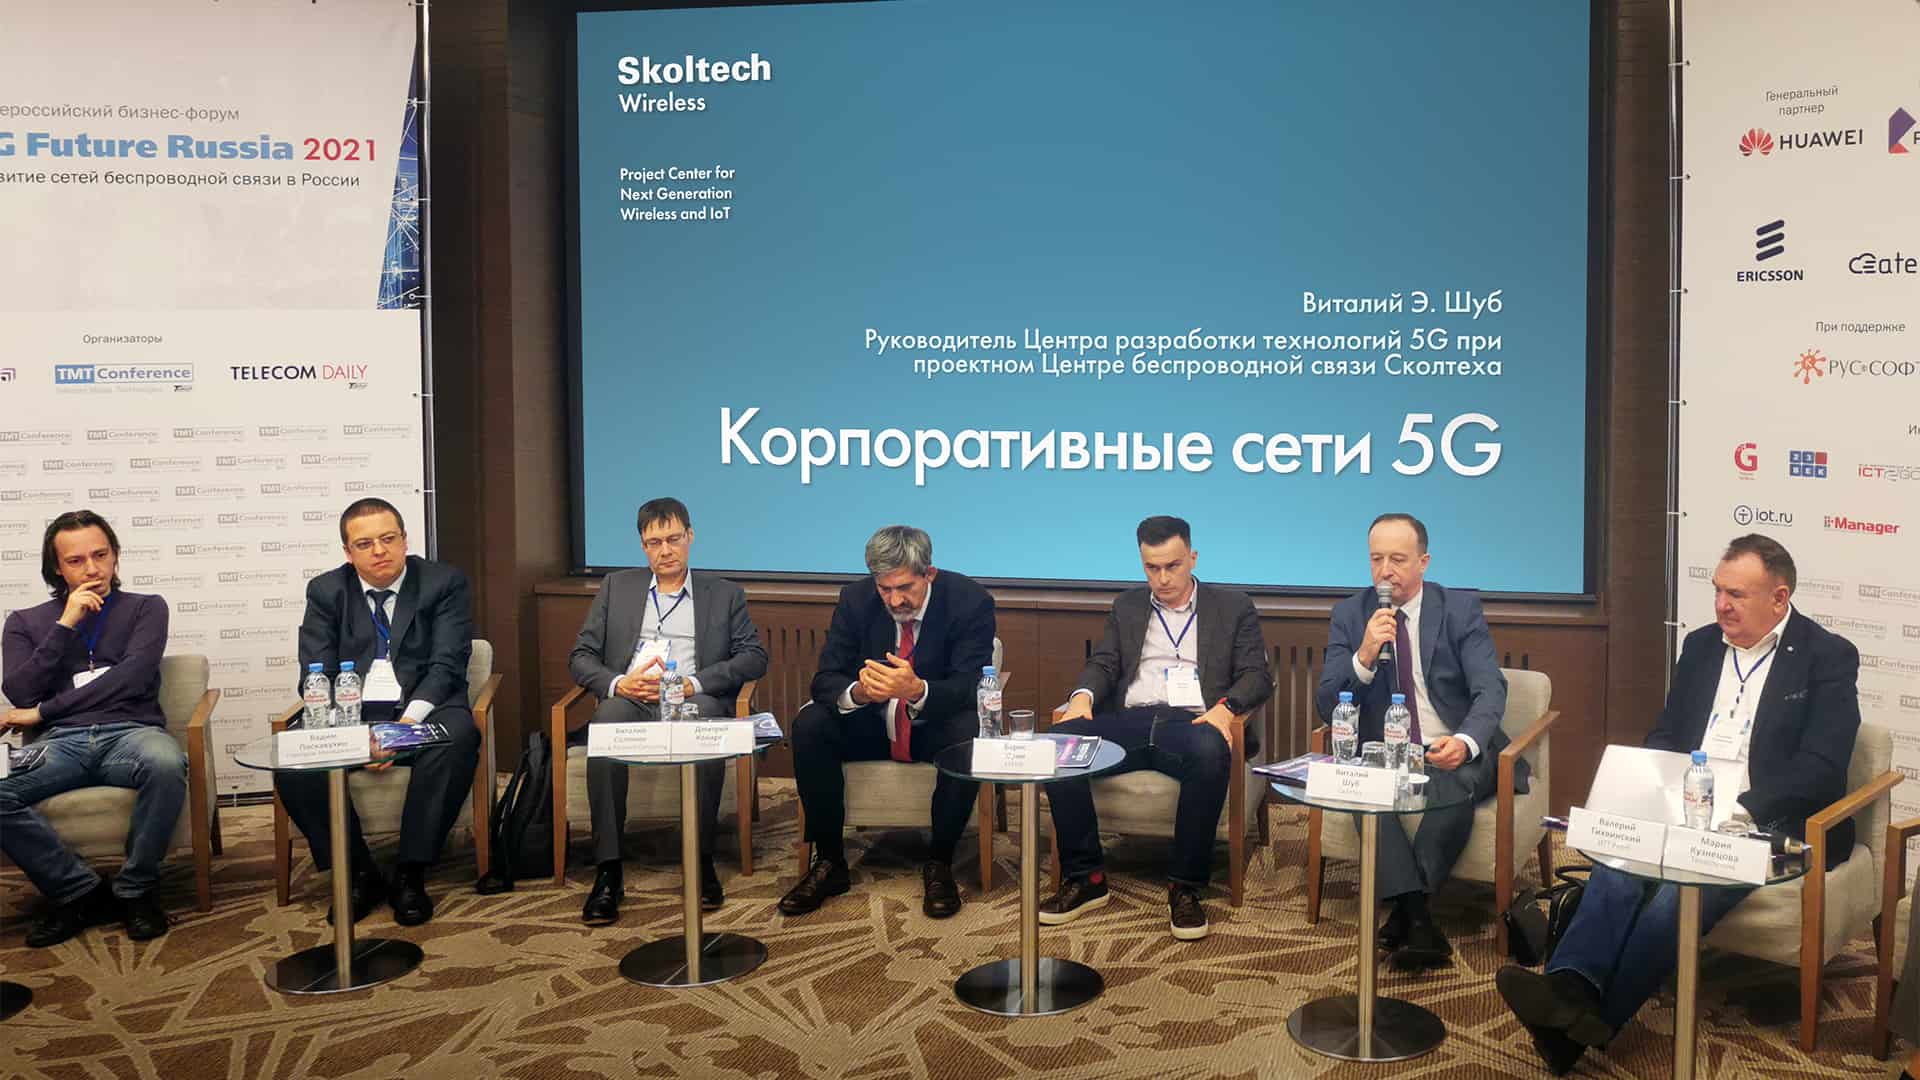 Виталий Шуб, руководитель Лидирующего исследовательского центра 5G на базе Сколтеха, 27 октября принял участие в форуме «5G Future Russia 2021». Он выступил с презентацией «Корпоративные сети 5G» и рассказал о…